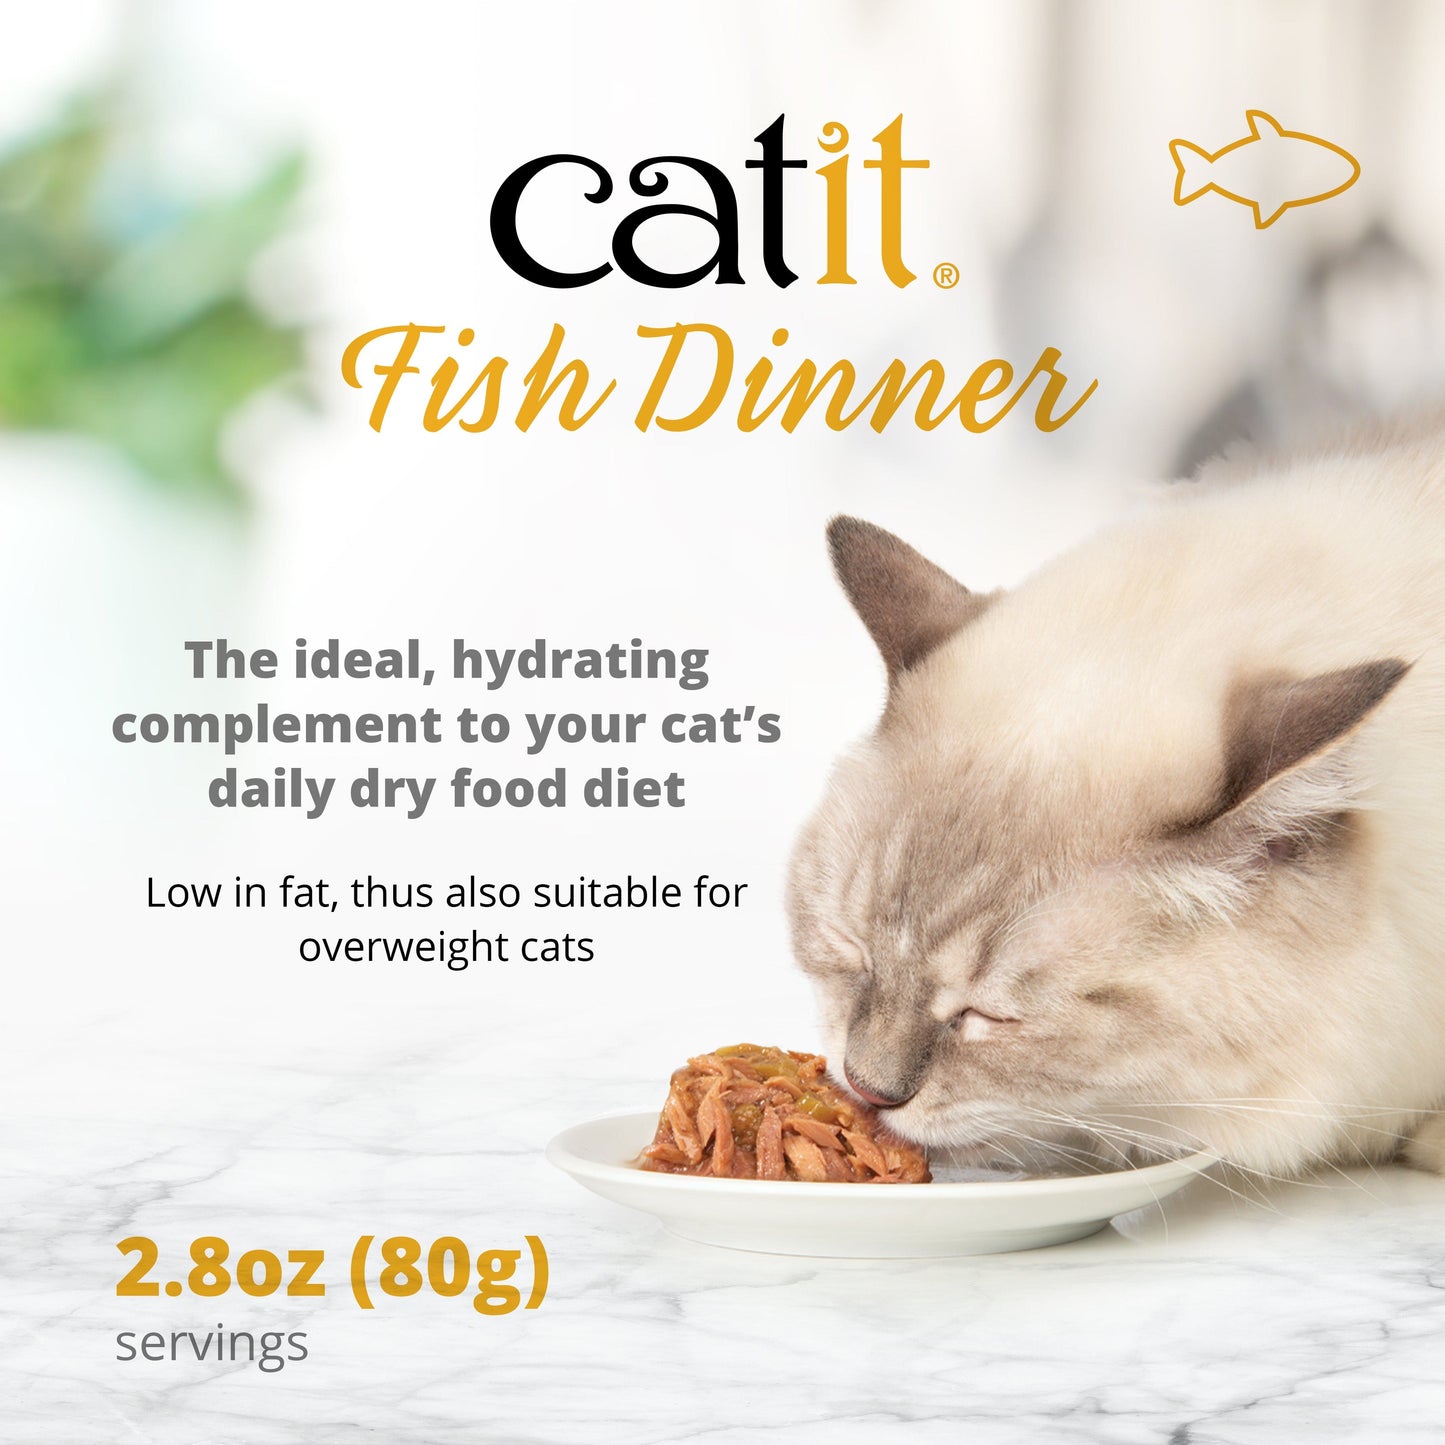 Catit Fish Dinner